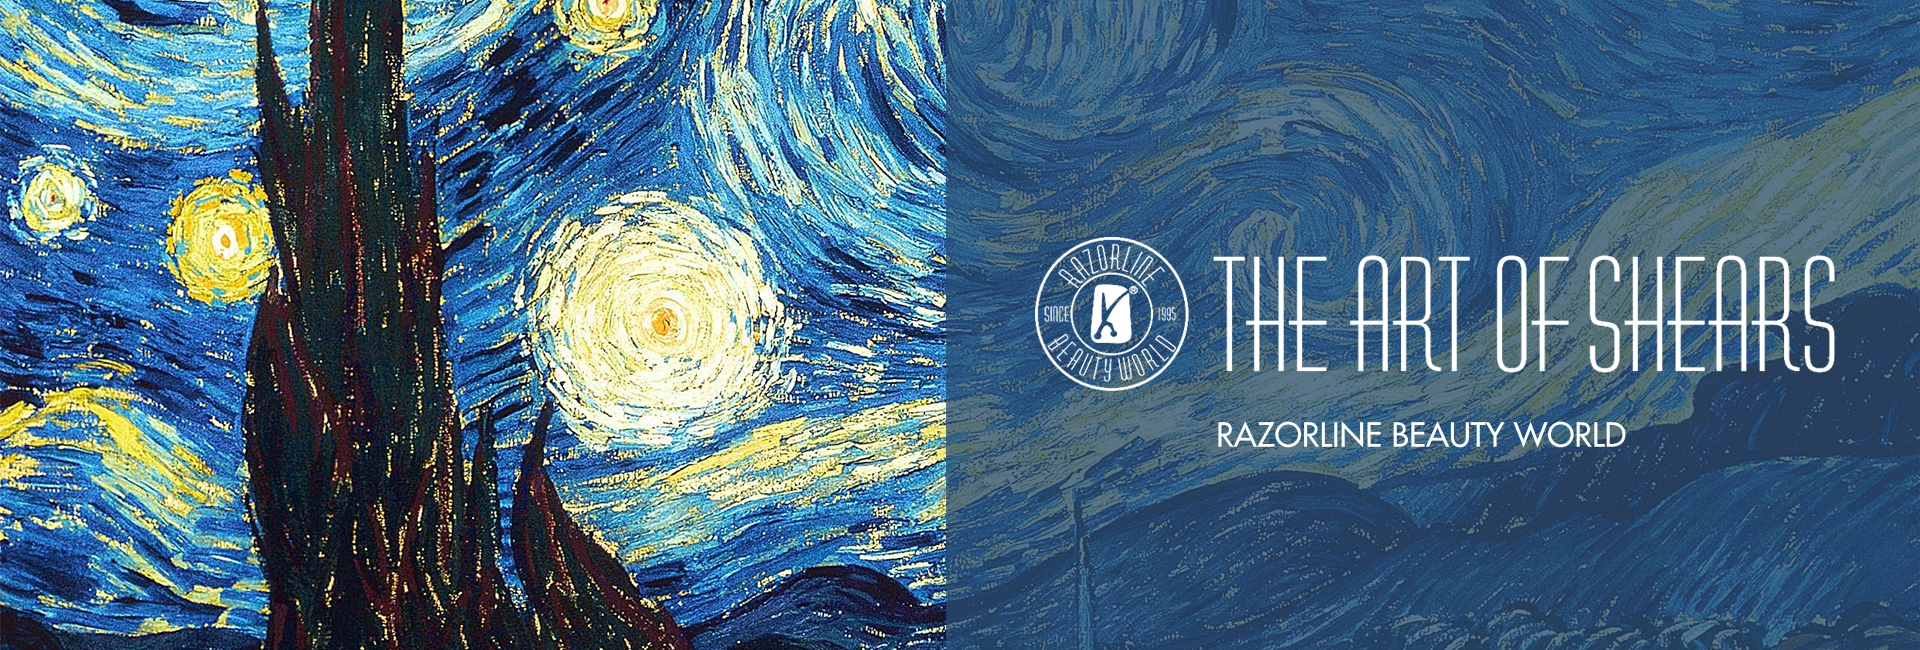 The art of shears-Razorline